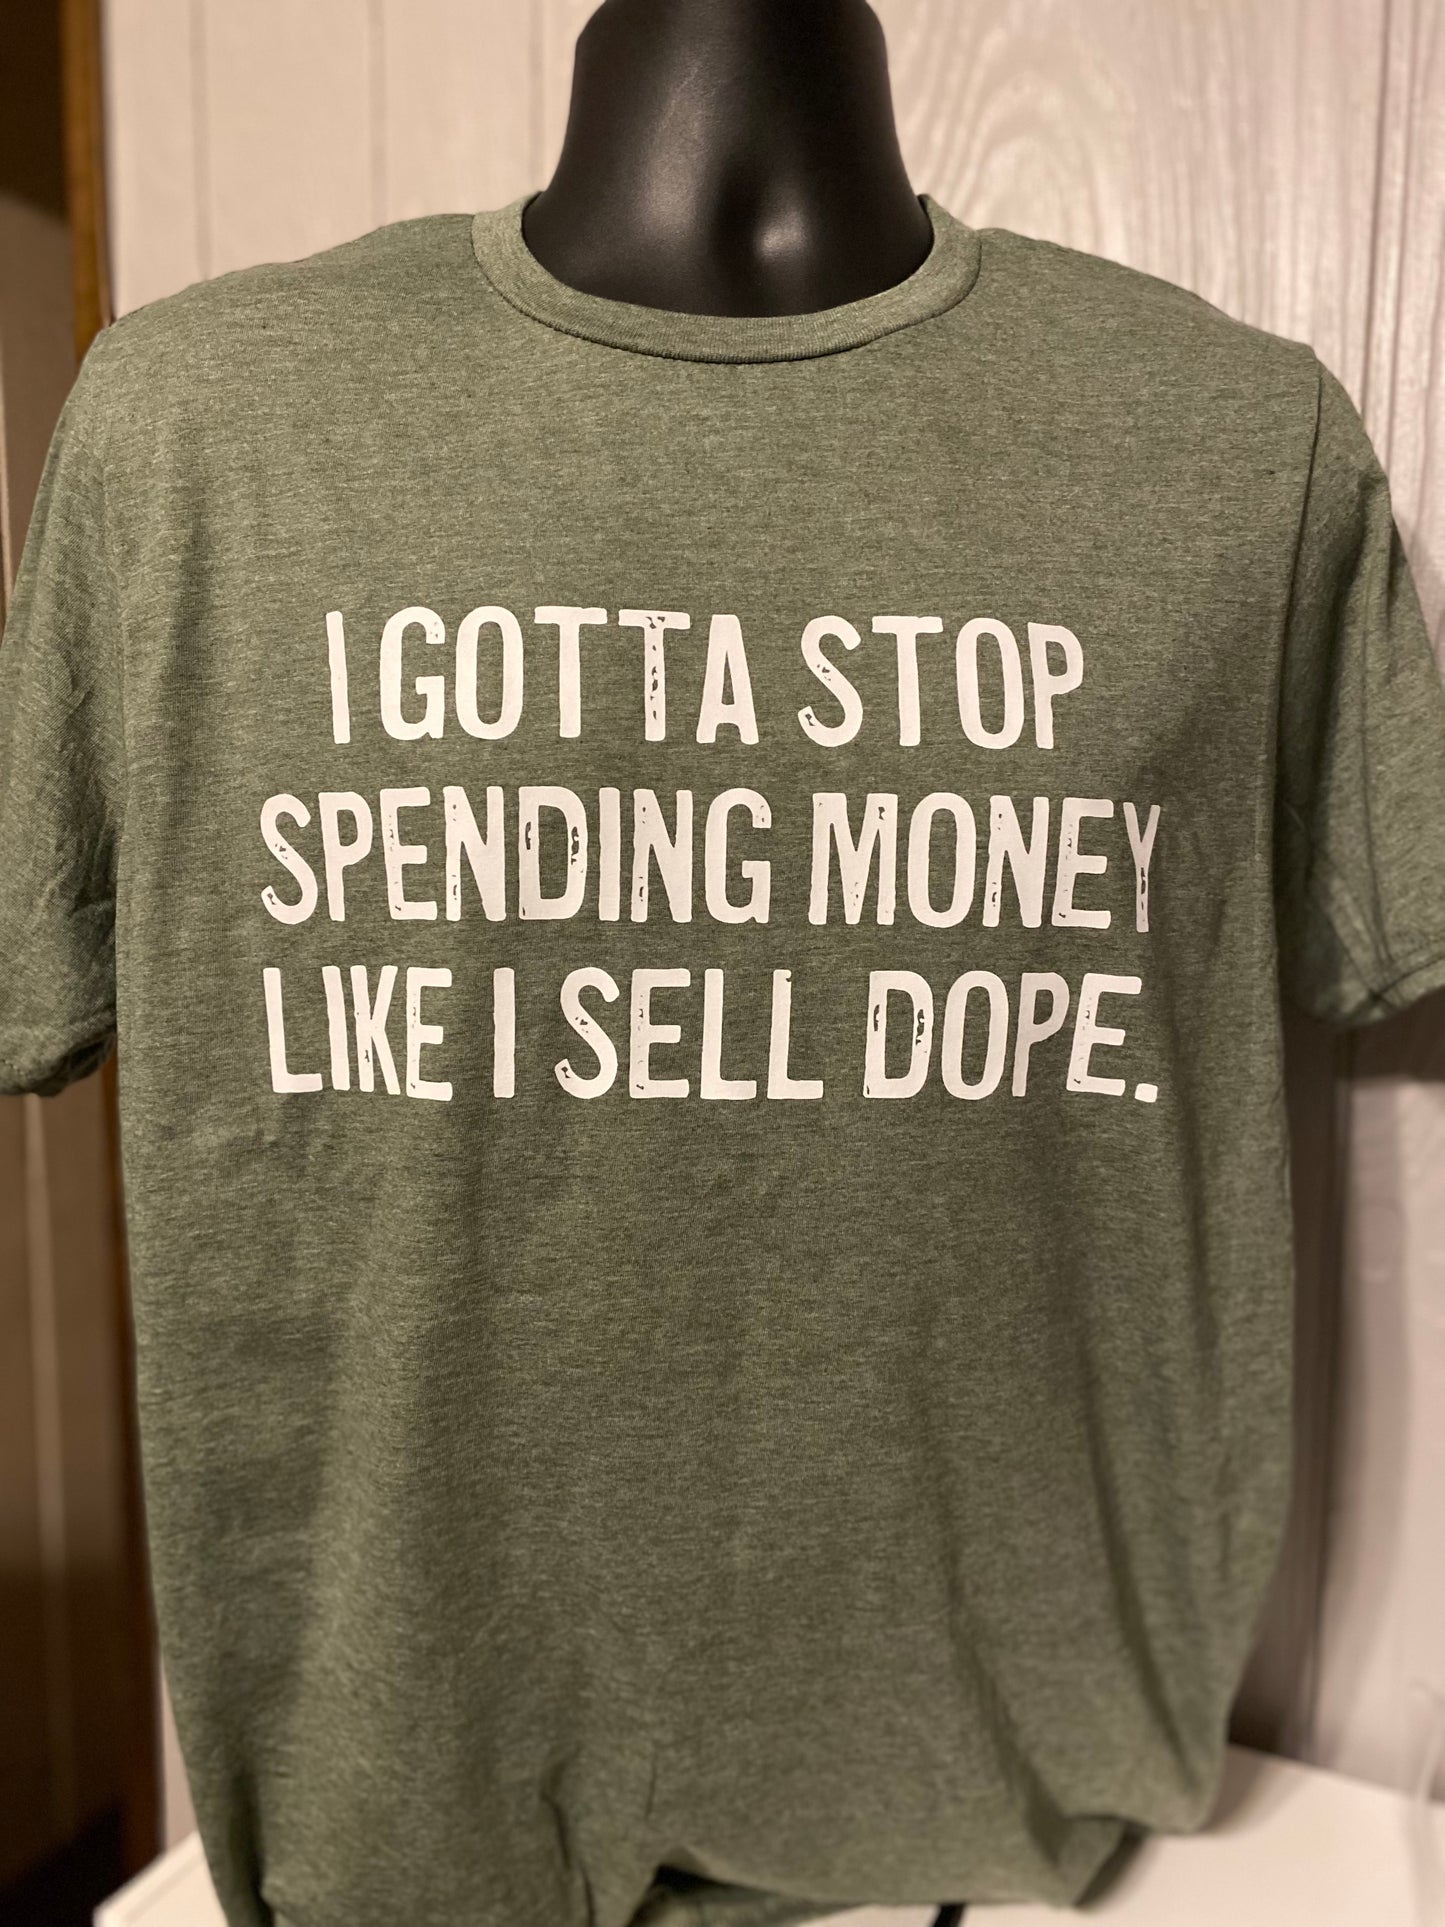 Gotta Stop Spending Money Like I Sell Dope